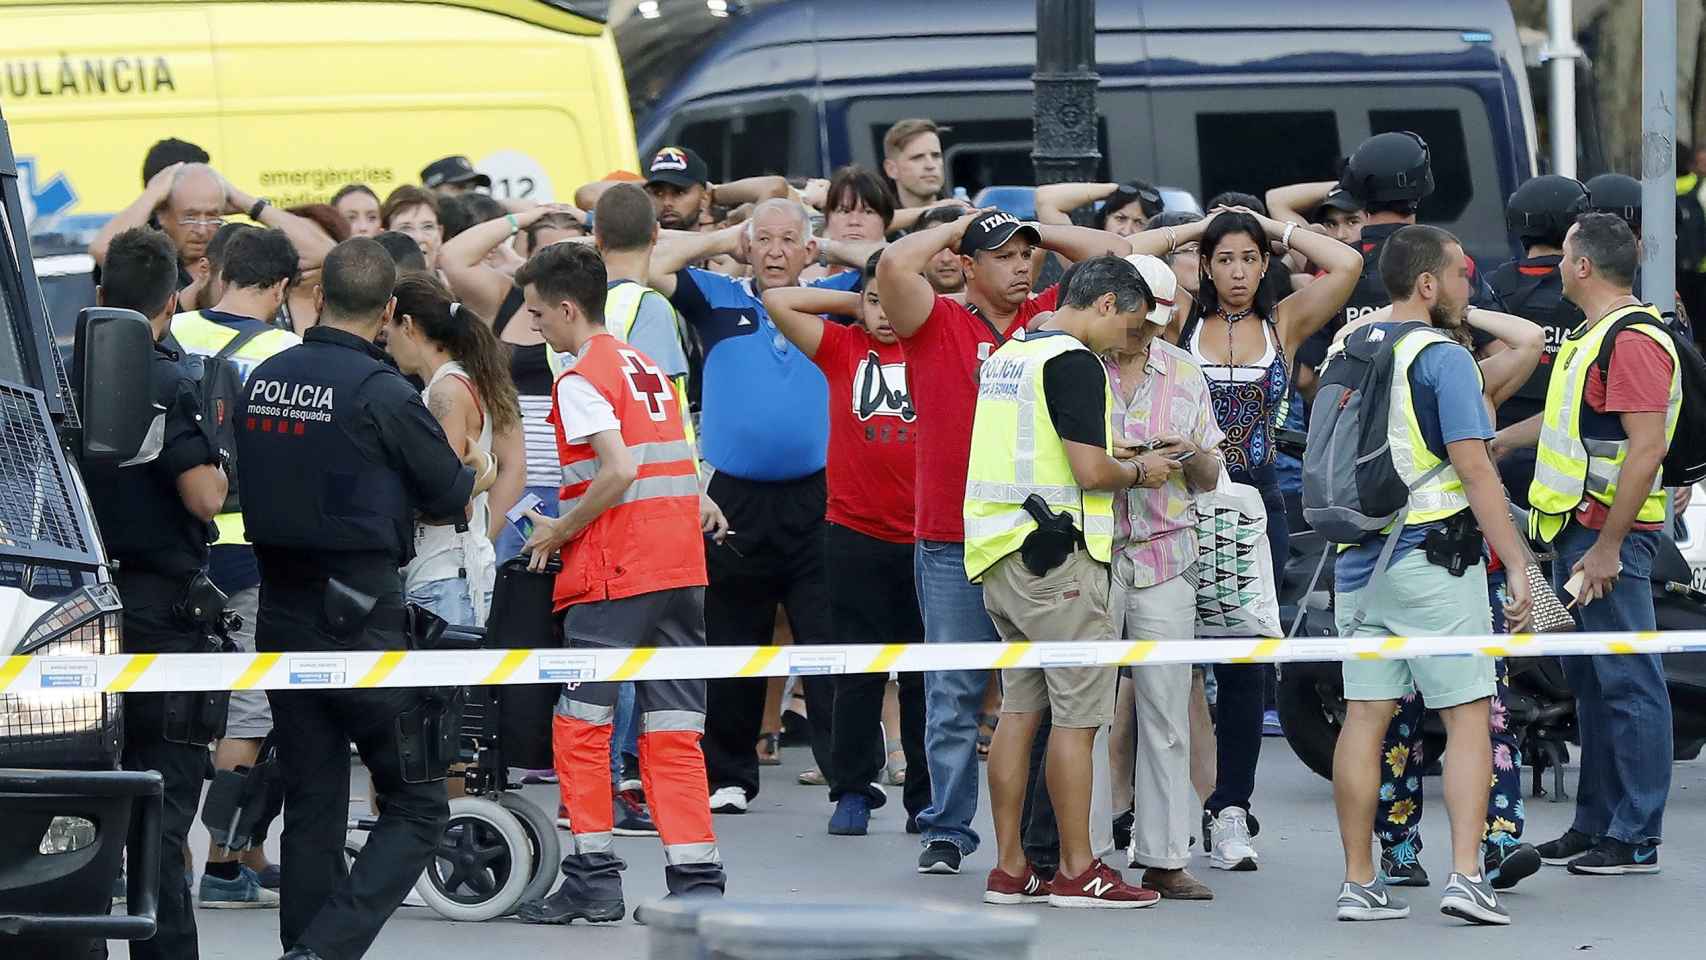 Imagen de La Rambla de Barcelona el día del atentado.